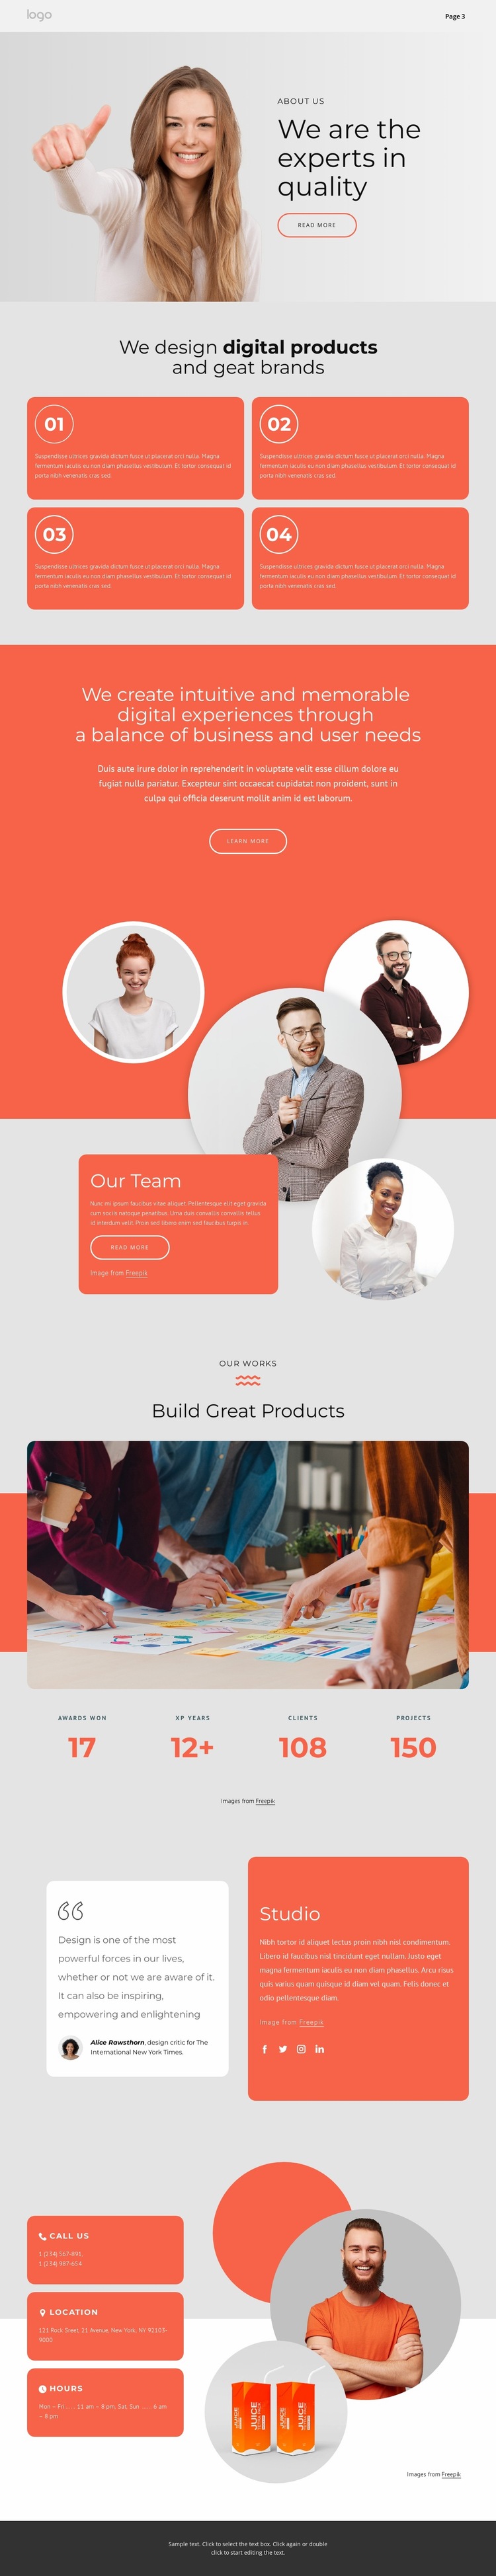 We design great brands Website Builder Templates